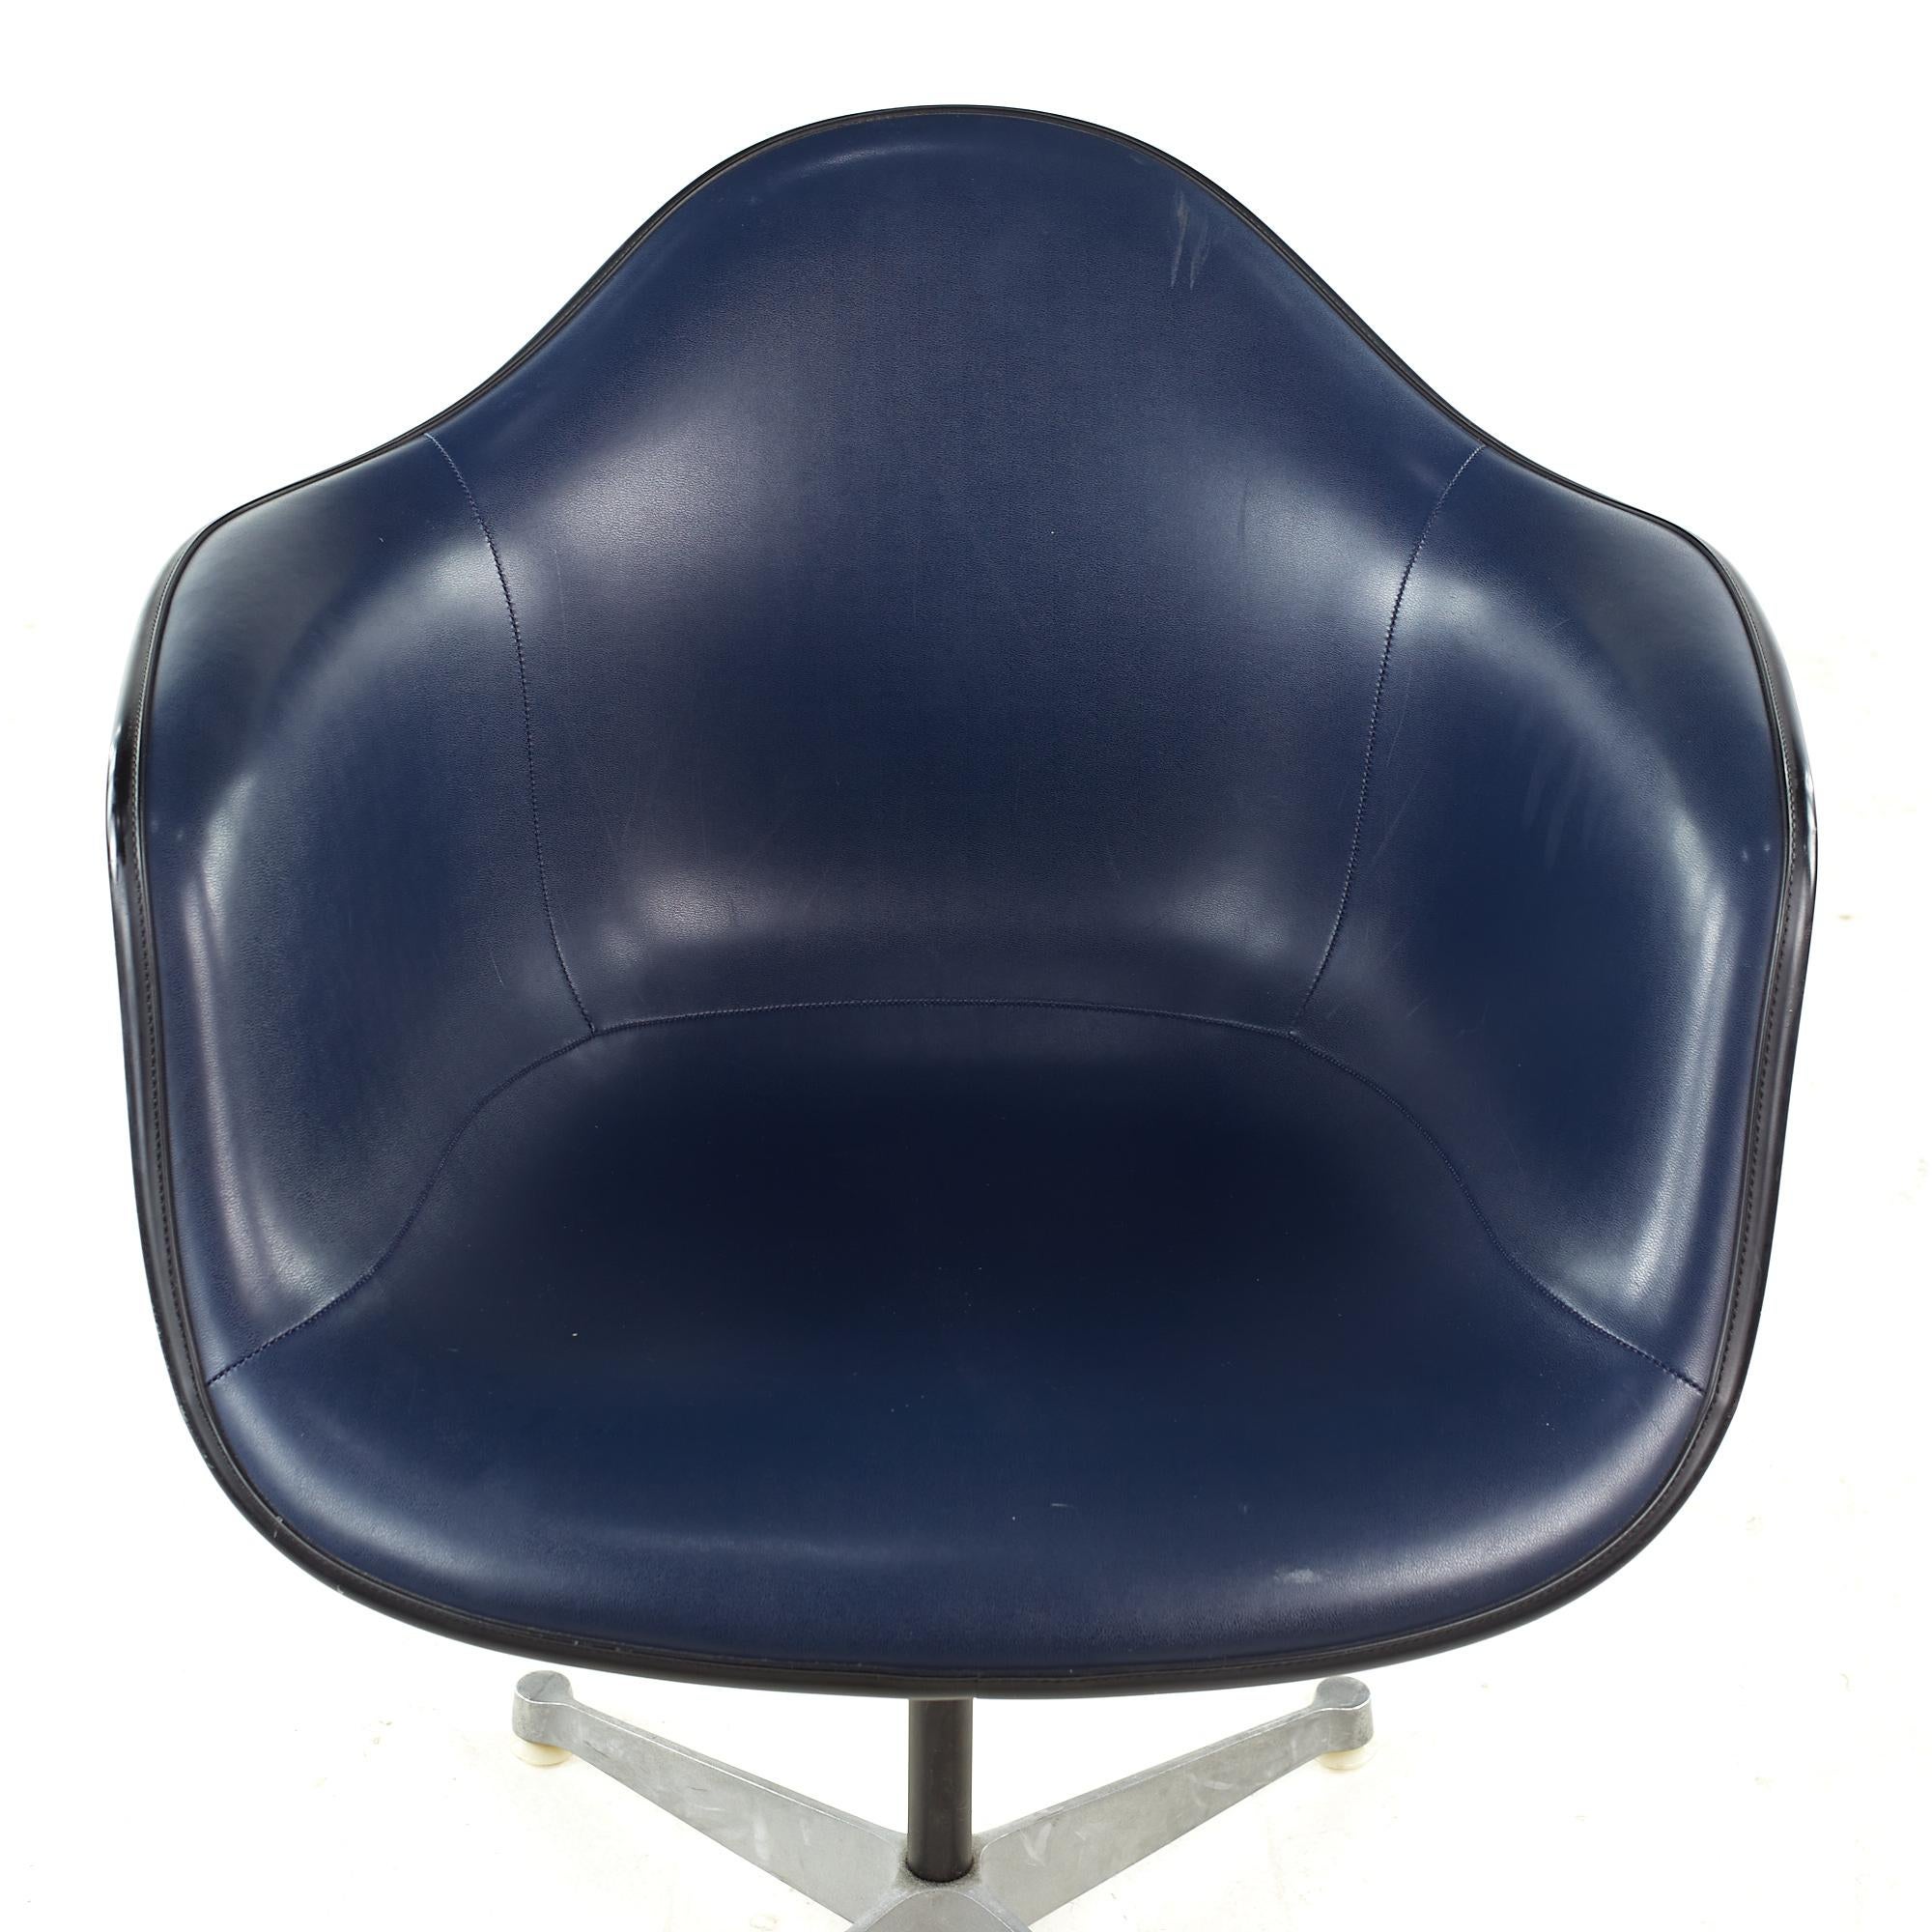 Fin du 20e siècle Charles Eames pour Herman Miller fauteuil de bureau coquillage tapissé du milieu du siècle dernier en vente